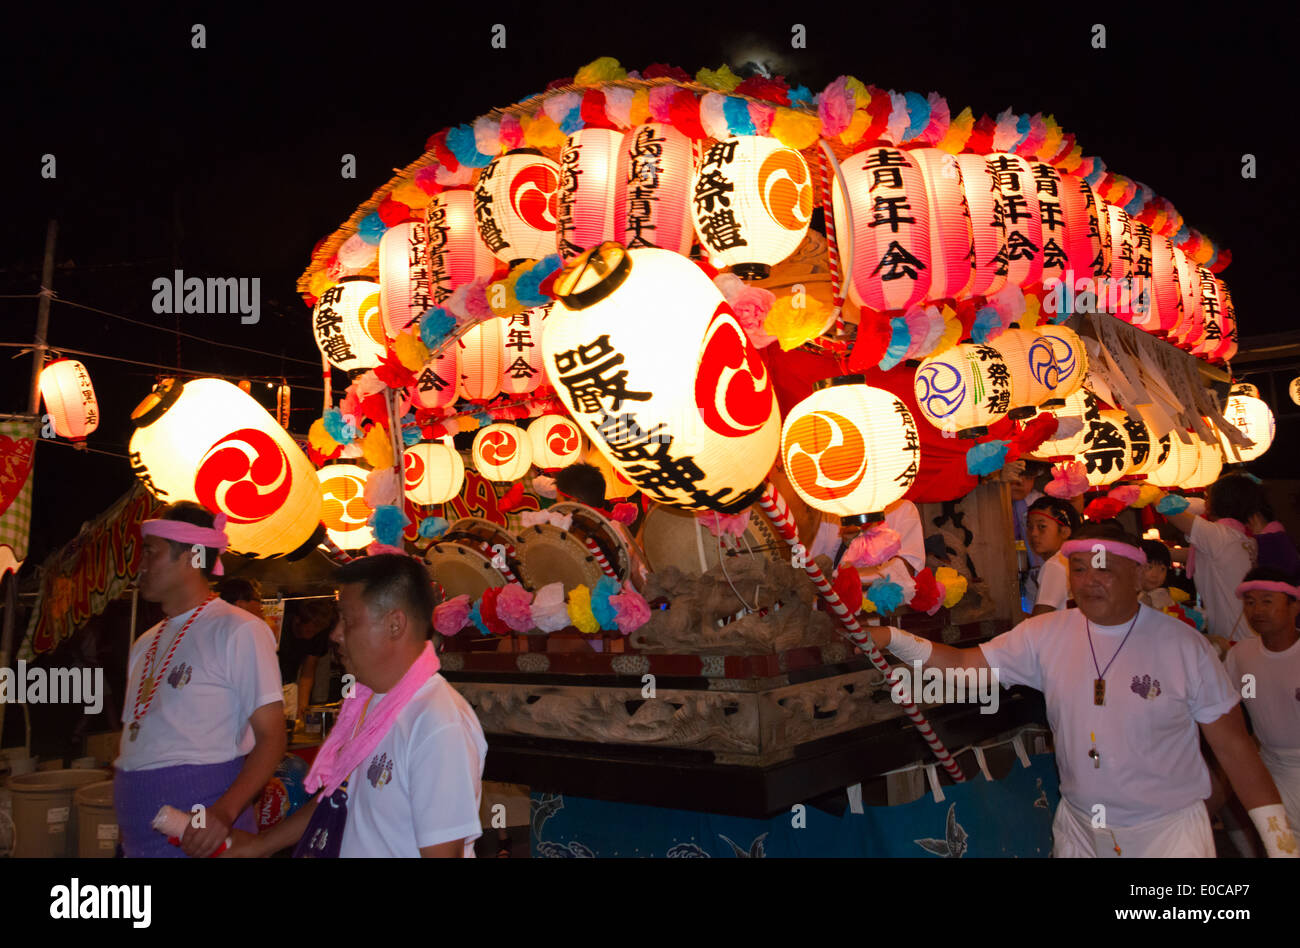 La célébration de la nuit du Festival Ama Shirahama, Minamiboso, Chiba Prefecture, Japan Banque D'Images